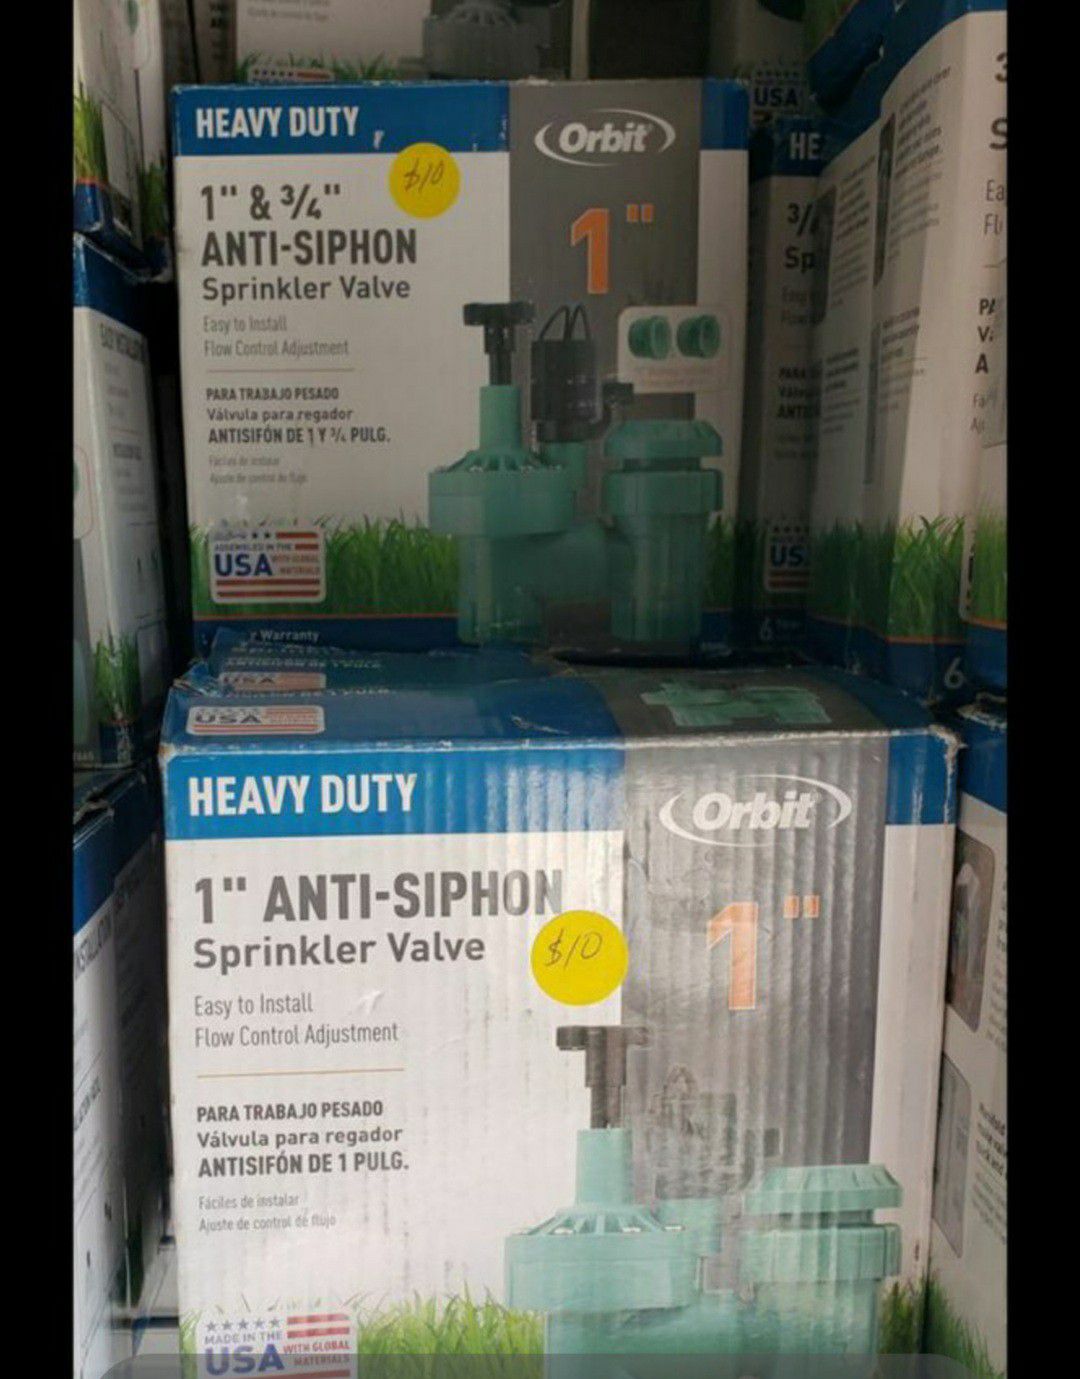 Orbit 1"&3/4" Anti-Siphon Sprinkler Valve